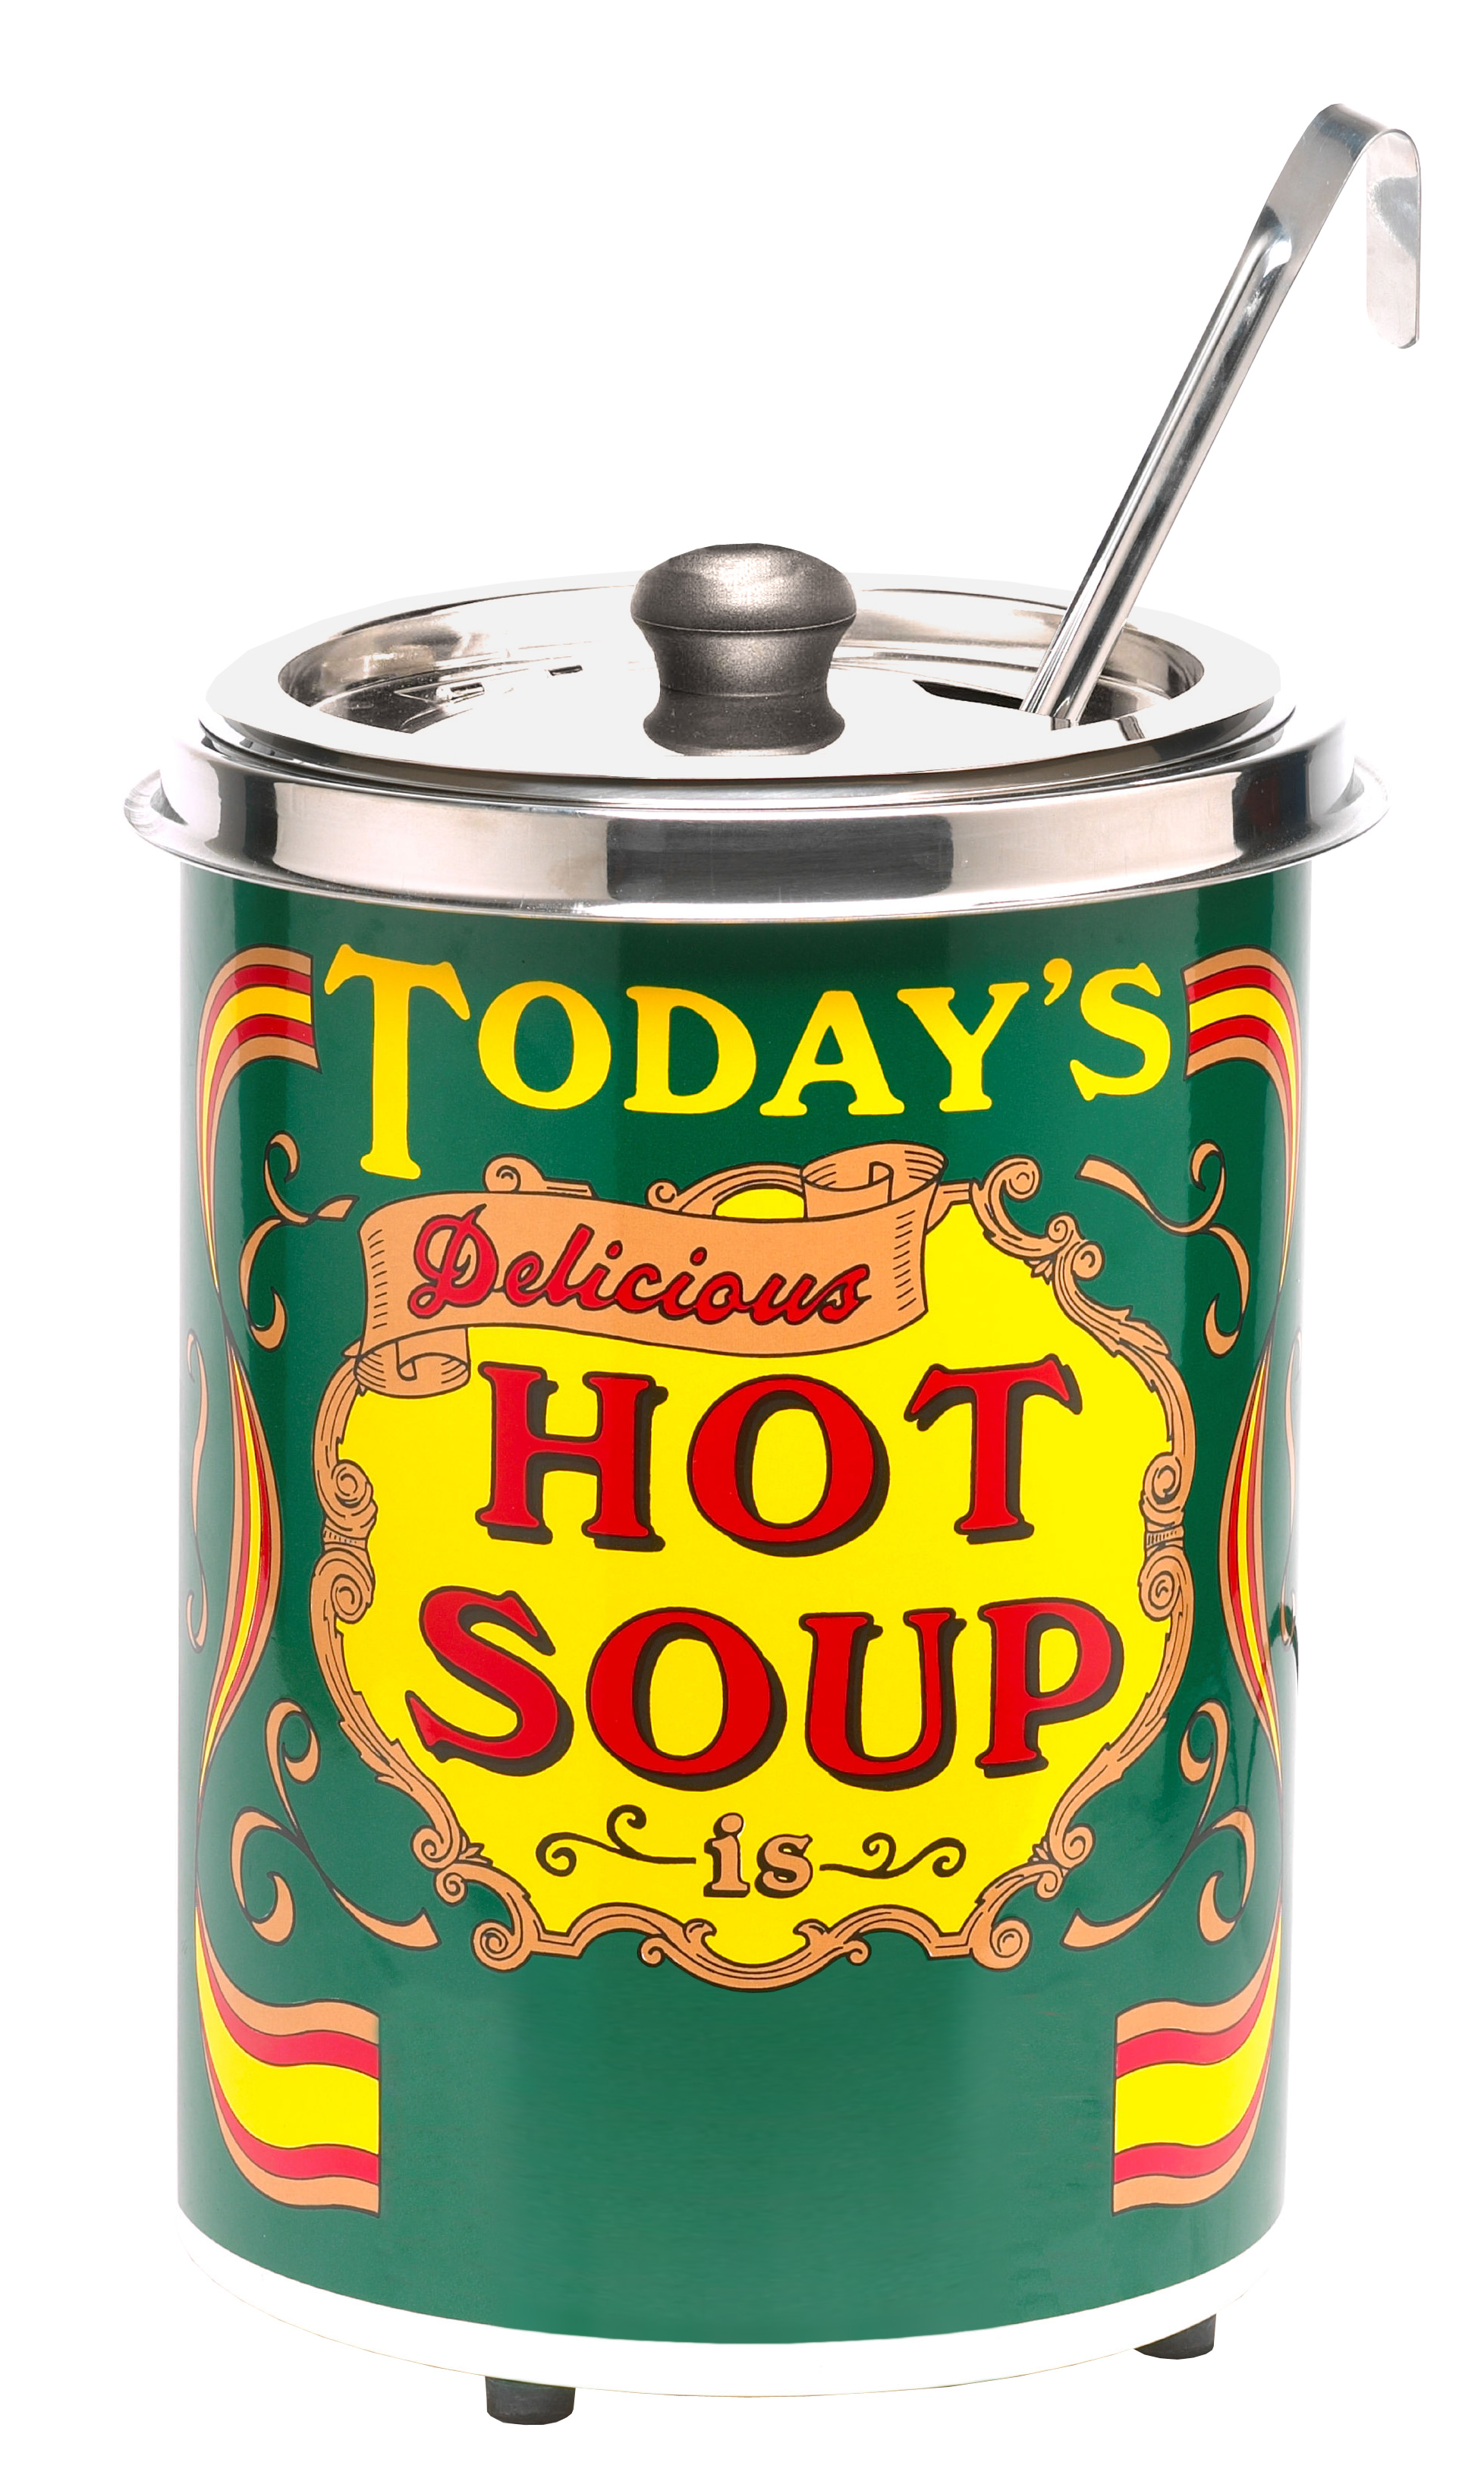 Neumärker Hot-Pot Suppentopf